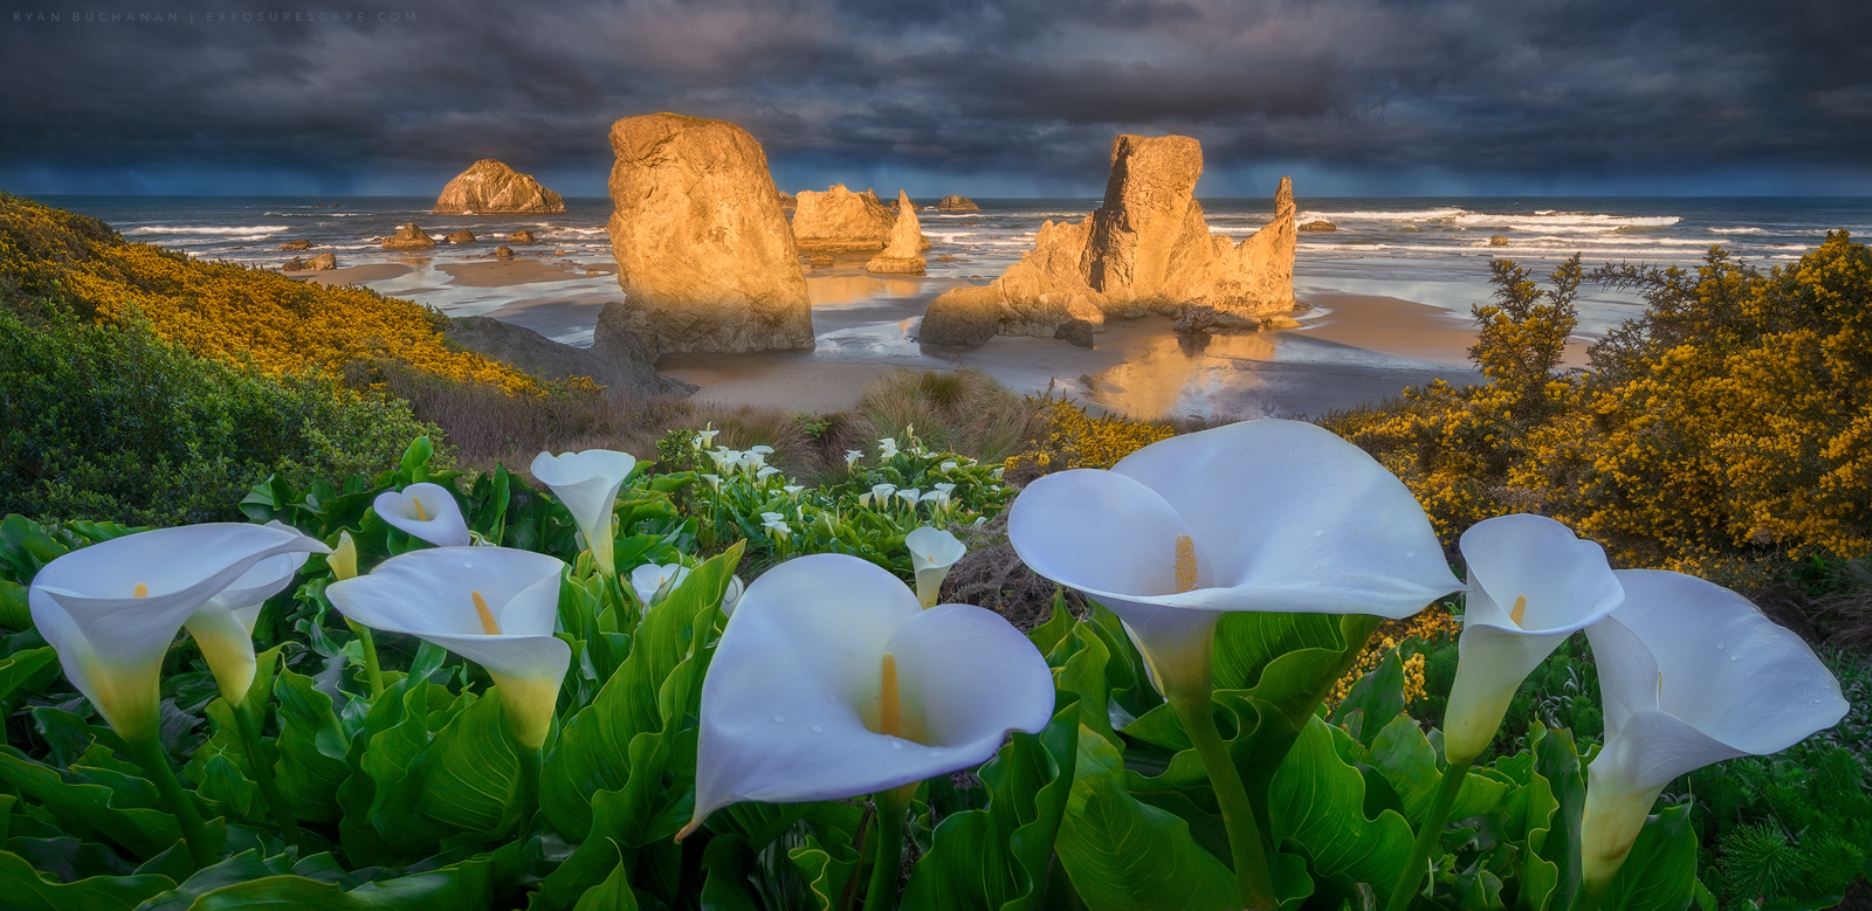 calla lily, earth, beach, bandon beach, cloud, flower, horizon, ocean, oregon, seascape, shore, white flower